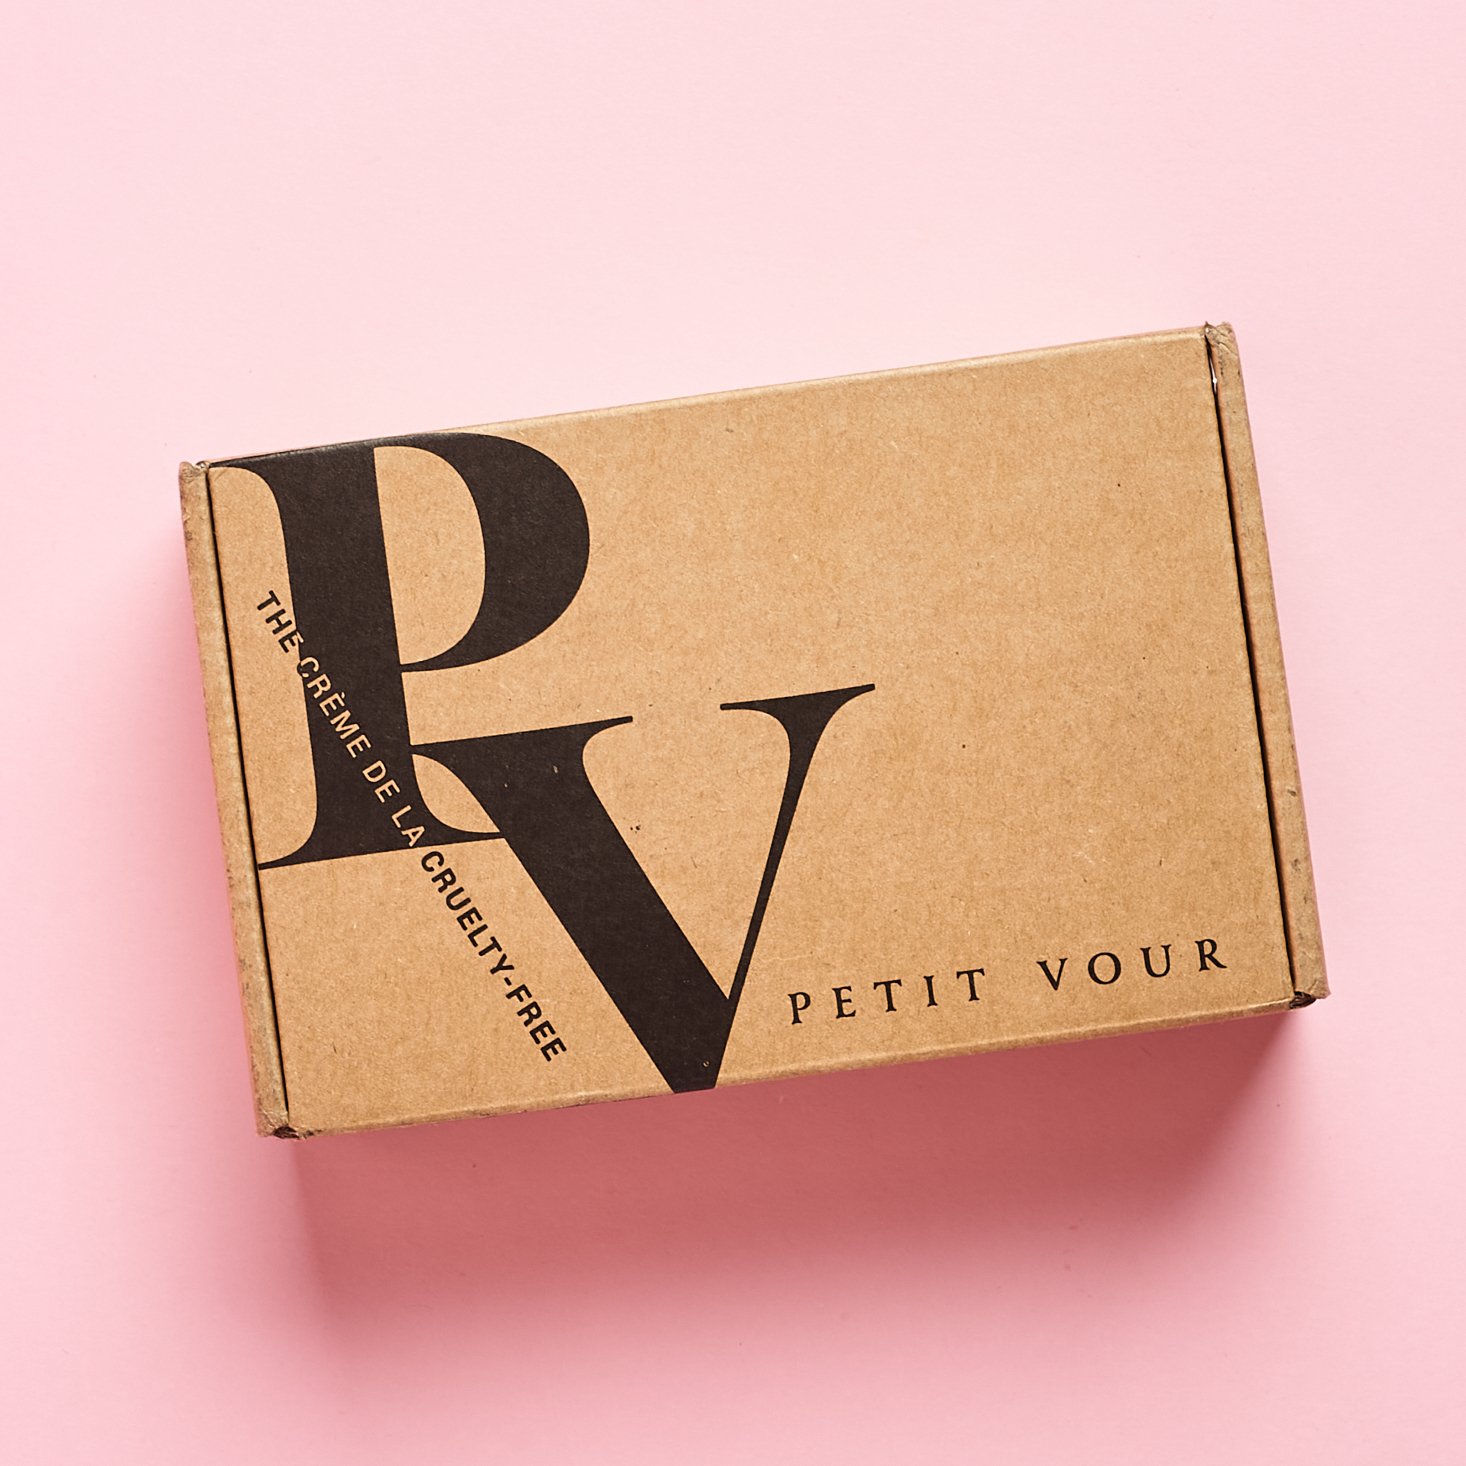 Petit Vour Plus Vegan Beauty Box Review + Coupon – August 2020